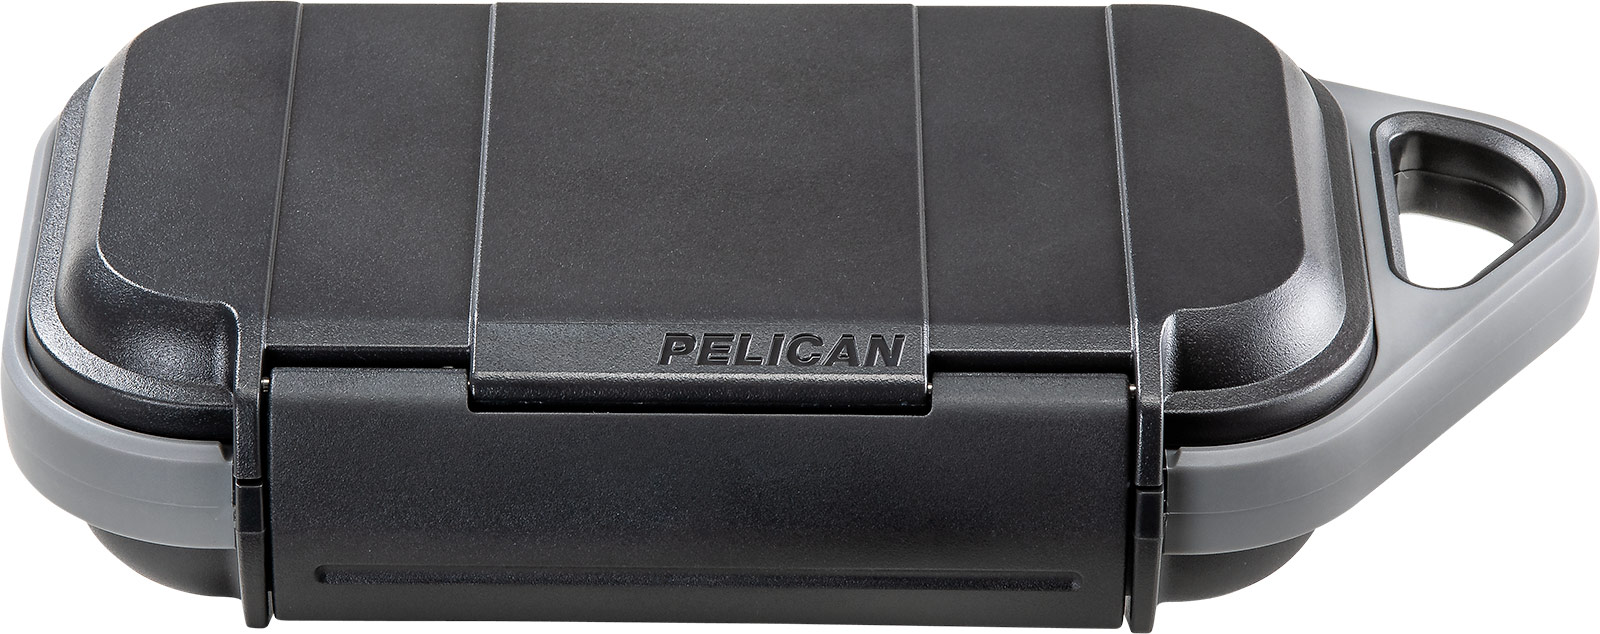 pelican micro small go case g40